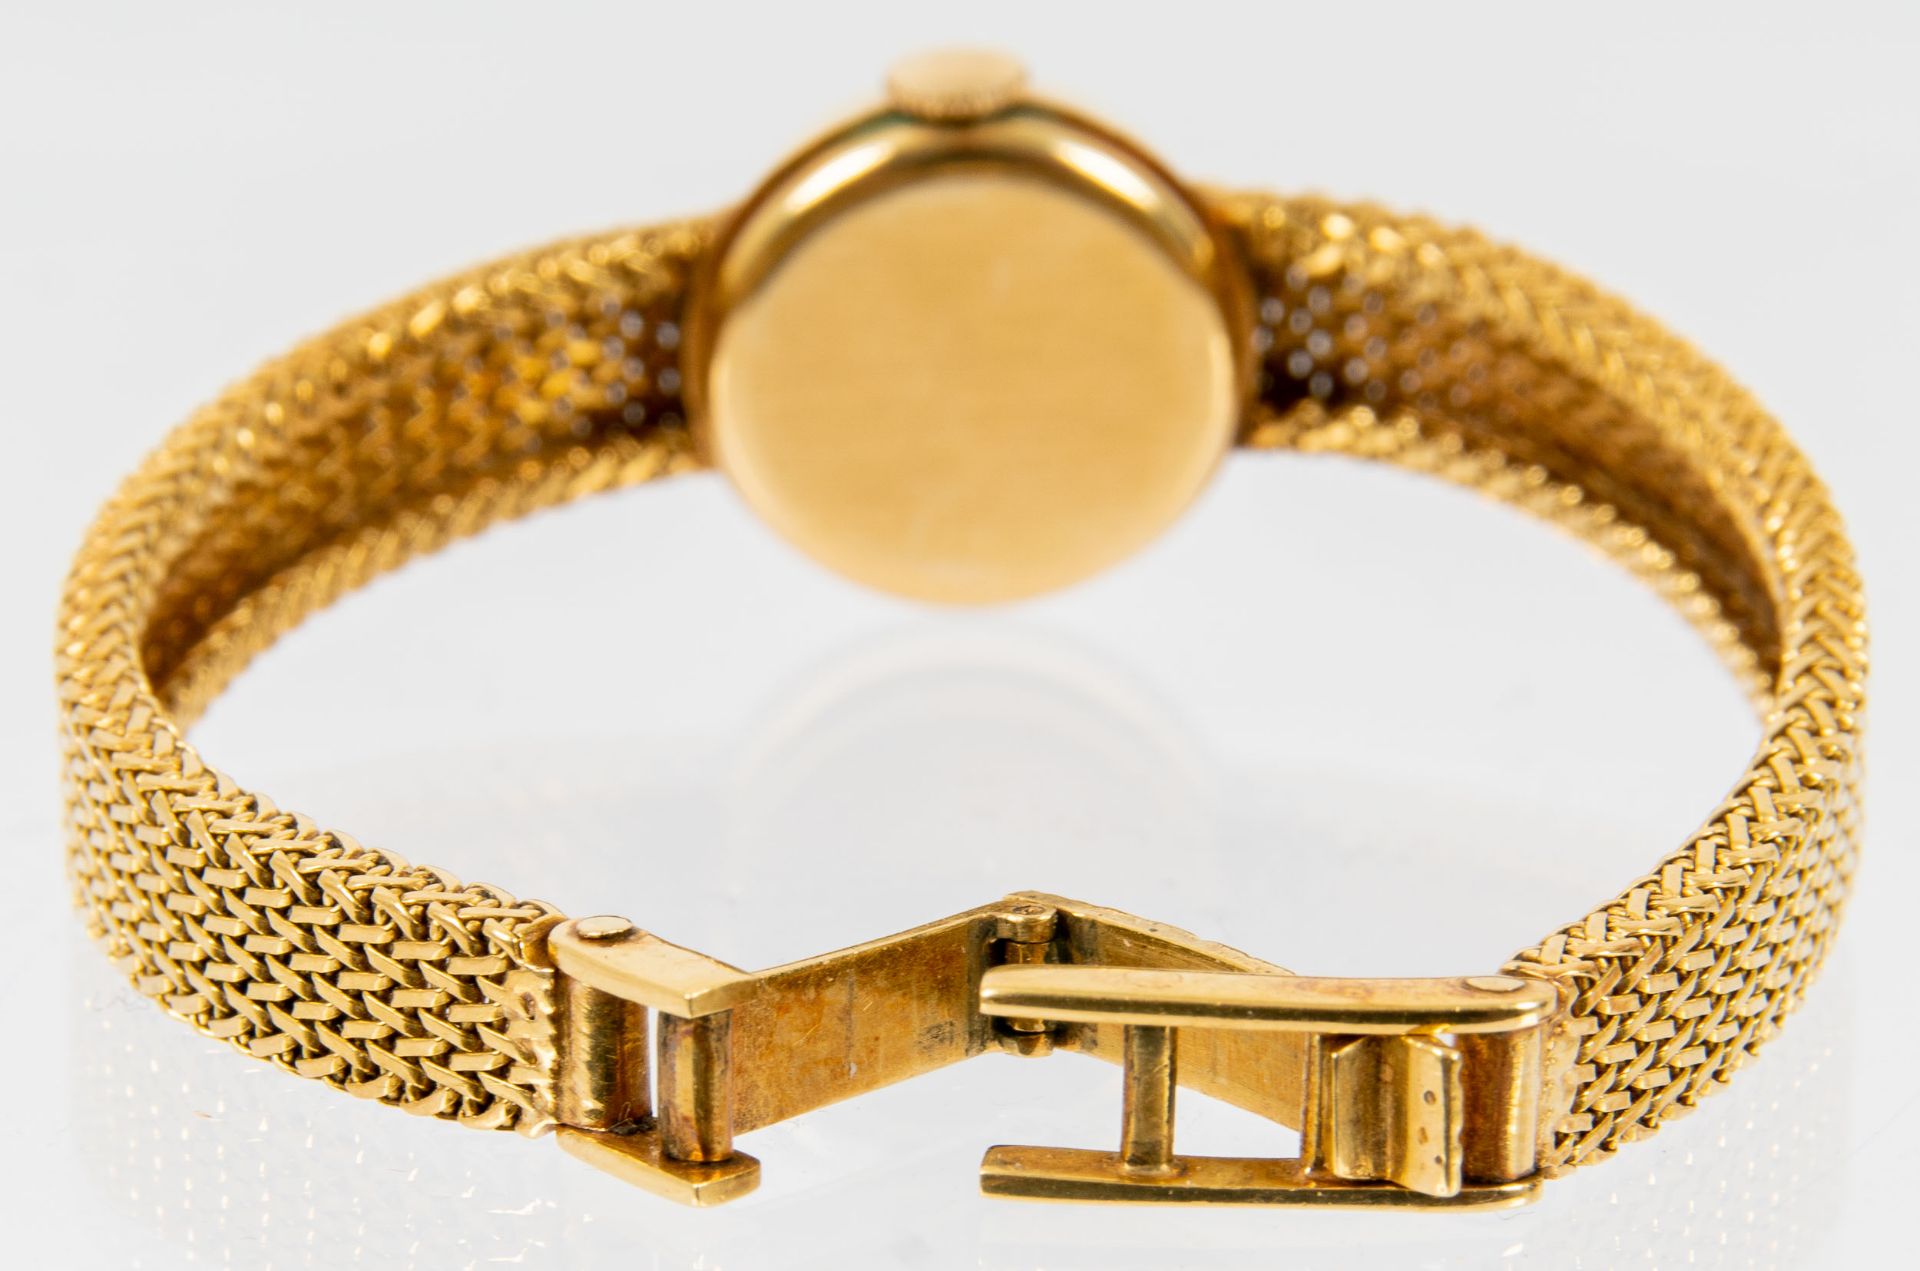 Klassische Damenarmbanduhr der Marke "KURZ-SWISS", Gehäuse und Armband in 750er Gelbgold, Werk läuf - Bild 6 aus 9